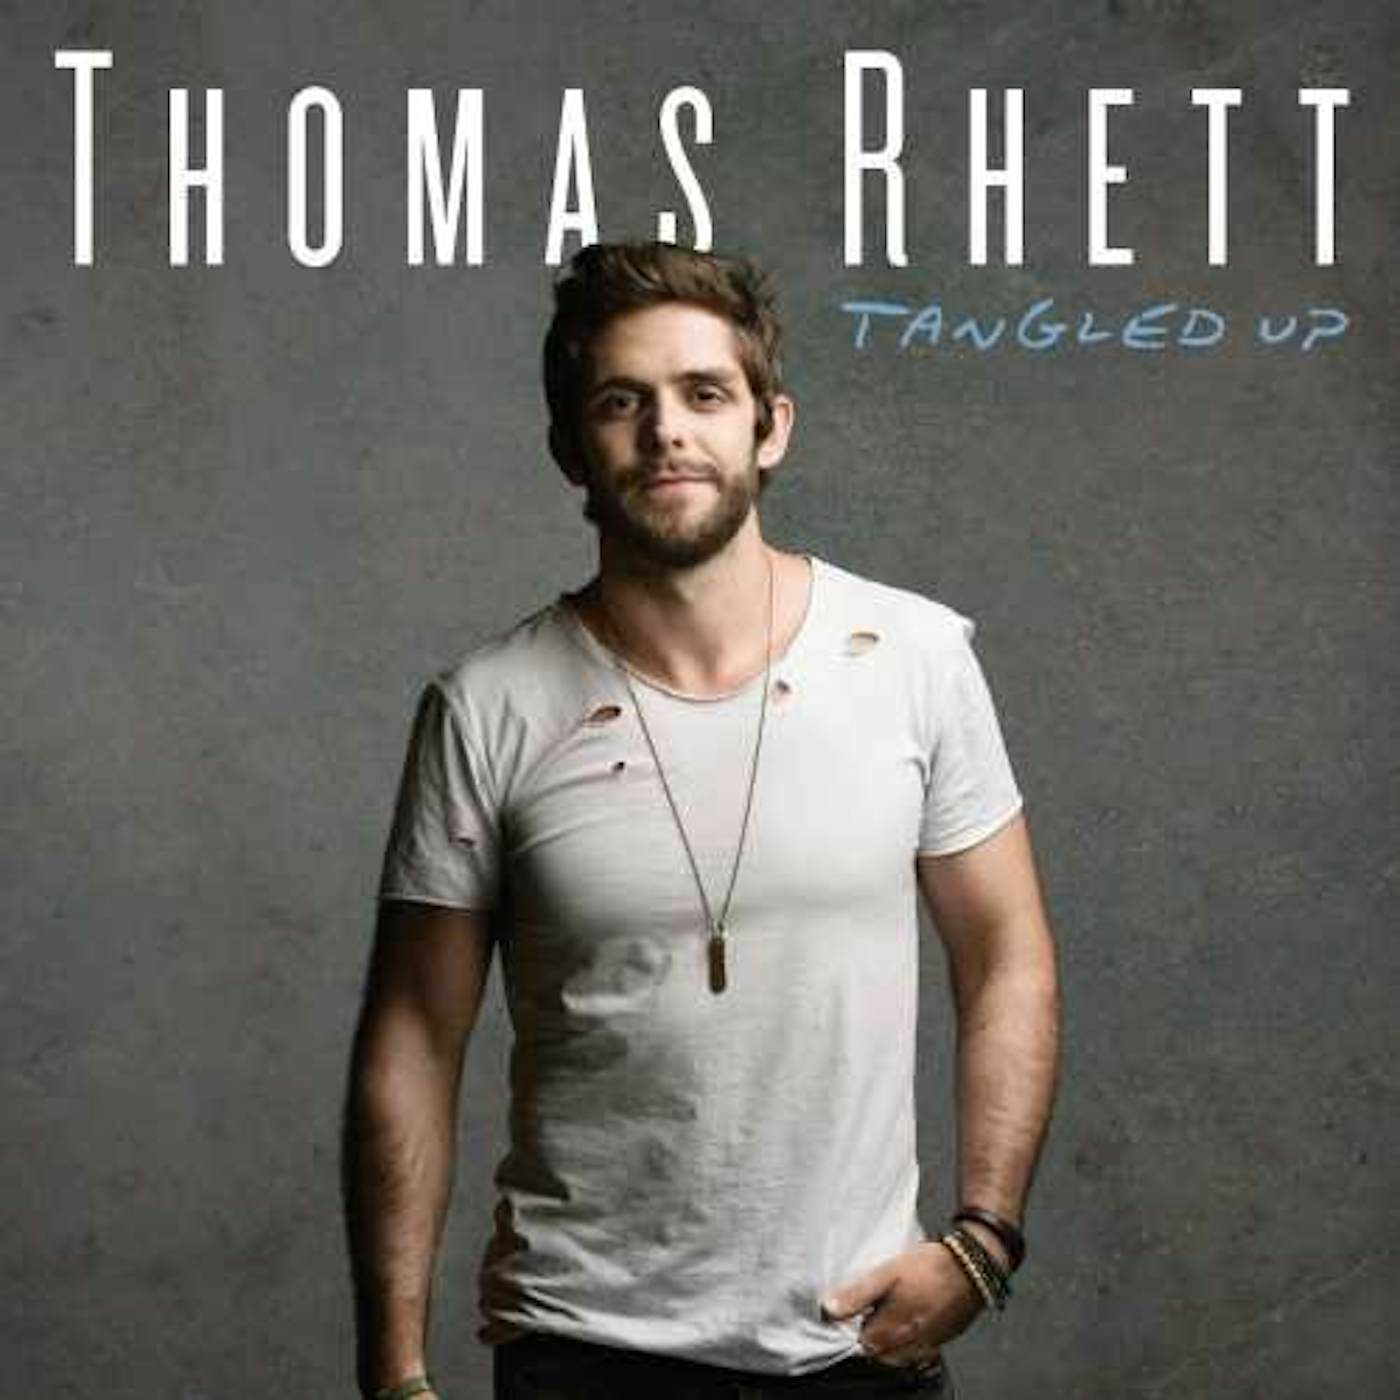 Thomas Rhett TANGLED UP CD